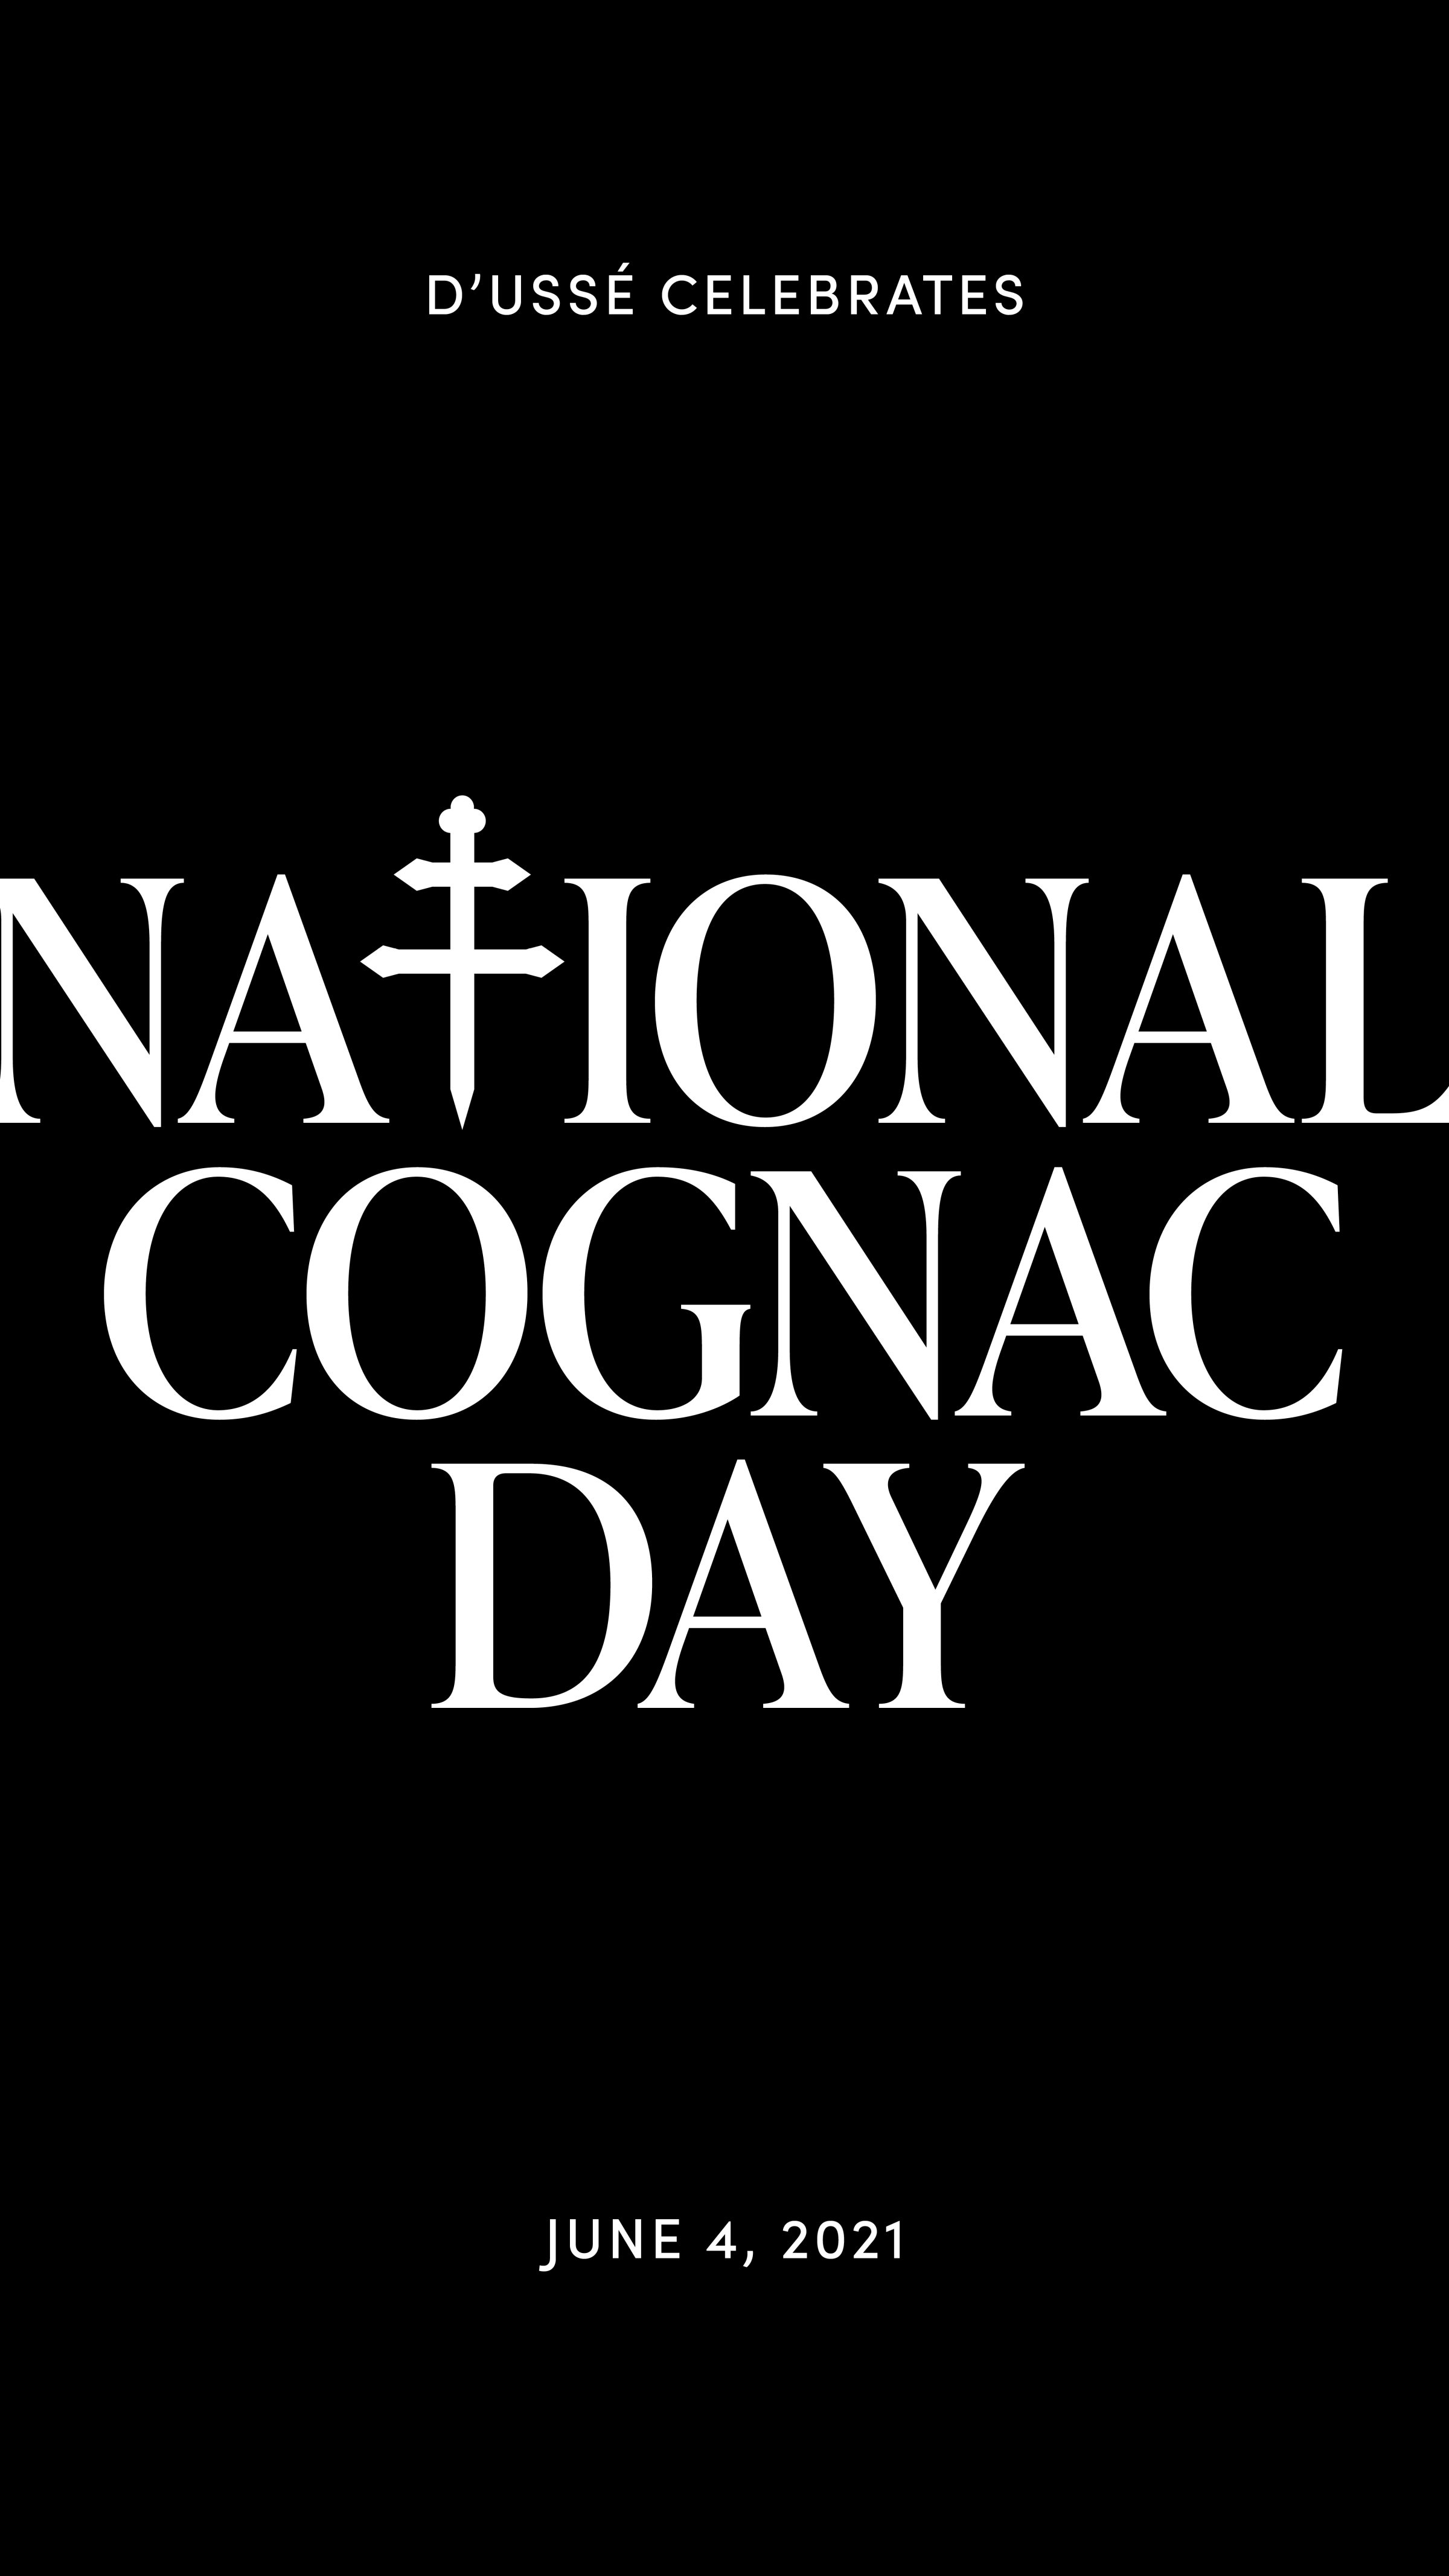 Dusse National Cognac Day